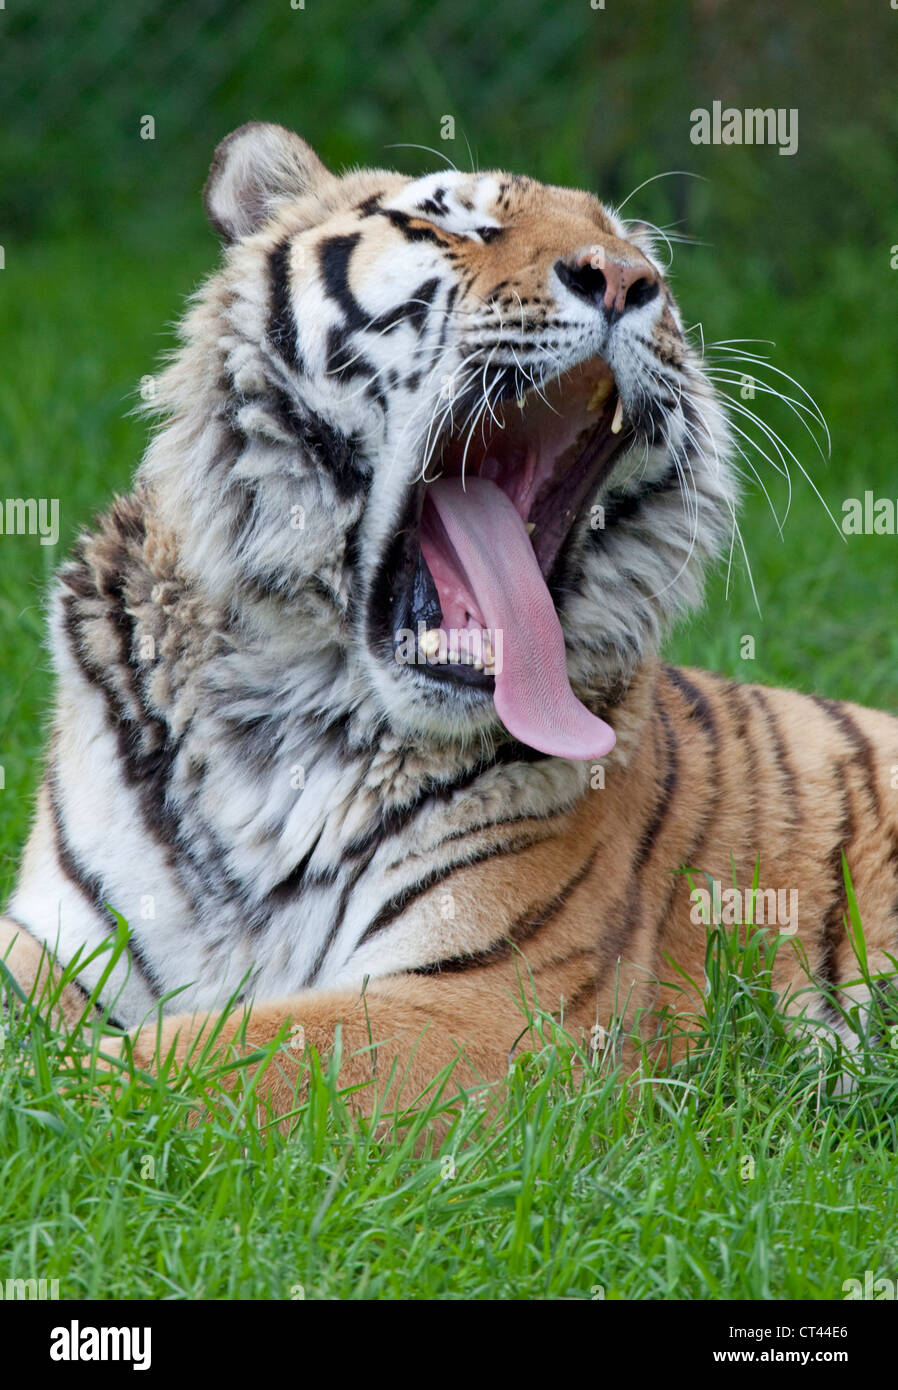 siberian amur tiger Stock Photo